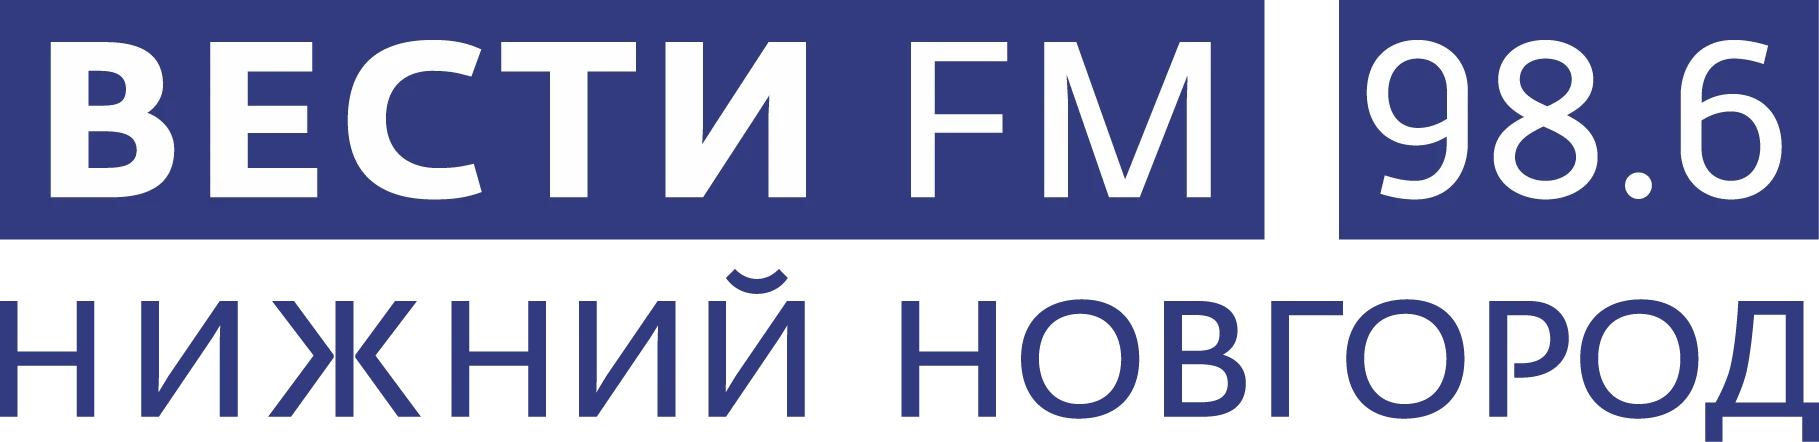 Вести FM